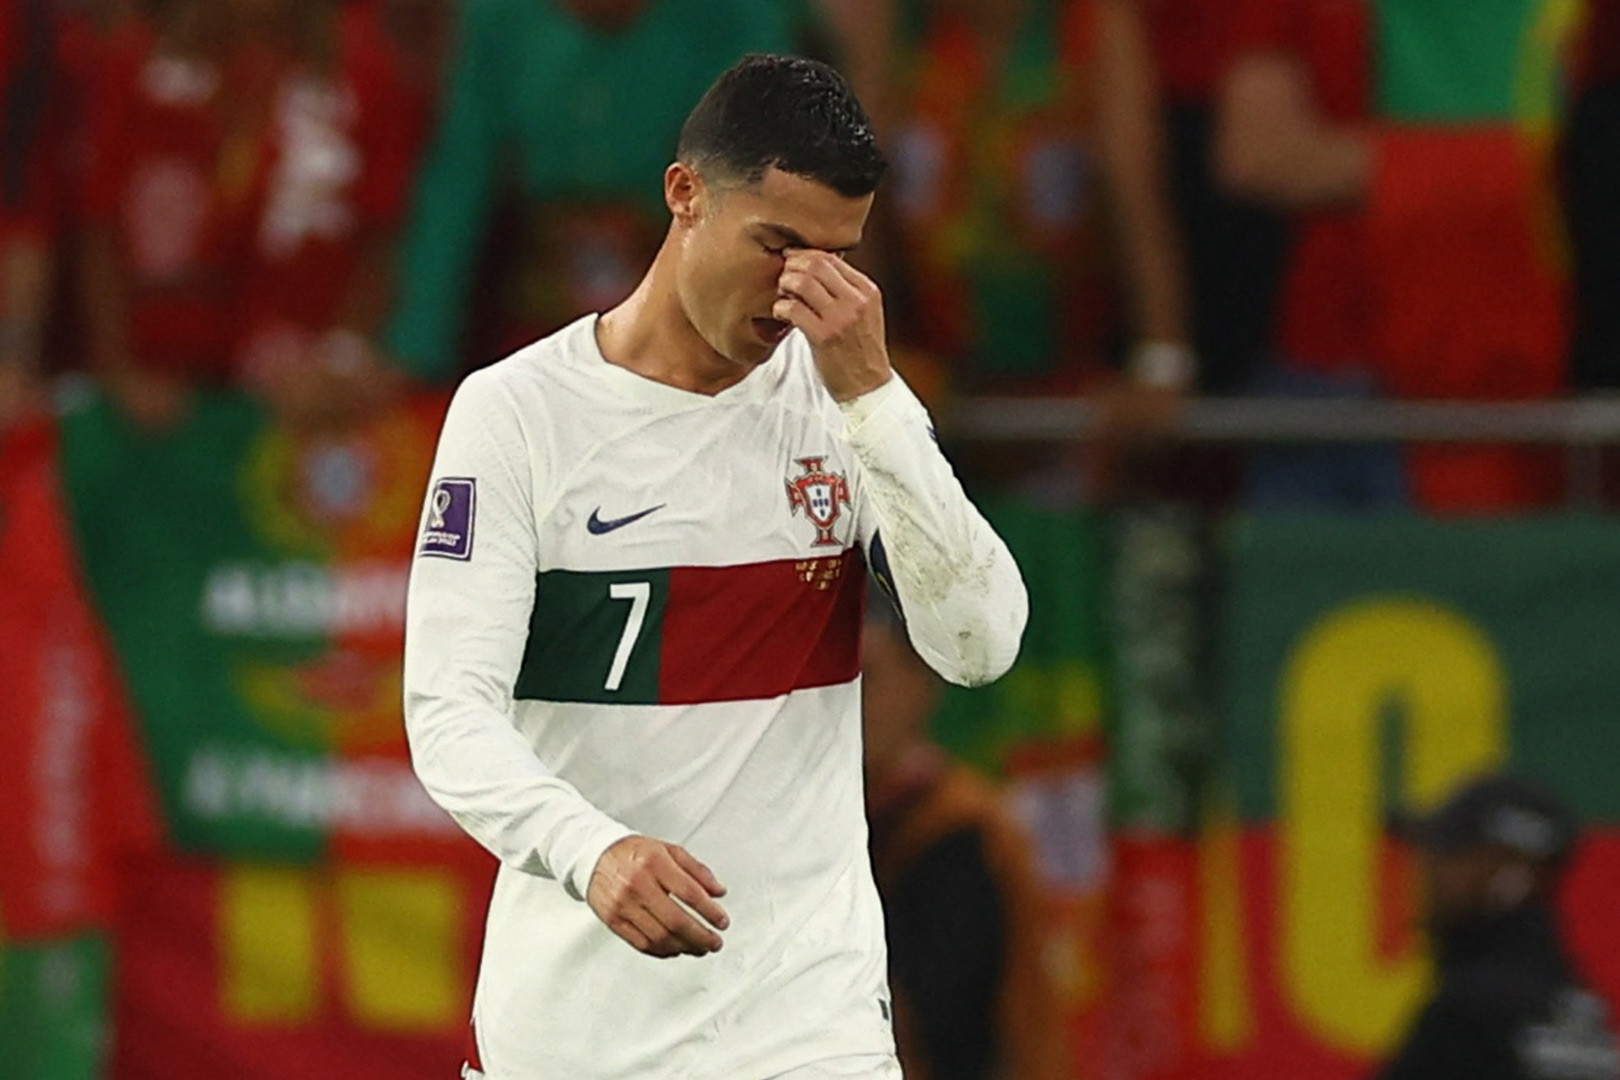 Ronaldo khóc: Tình cảm và sự dẫn đầu của Ronaldo trên sân đã khiến anh ta trở thành nhân vật hùng vĩ không chỉ trong lòng các fan hâm mộ, mà còn là trong lòng đối thủ. Bức hình Ronaldo khóc được chụp lại tại một trận đấu mới đây khiến người hâm mộ chứng kiến sự ấm áp và chân thành của anh như thế nào.